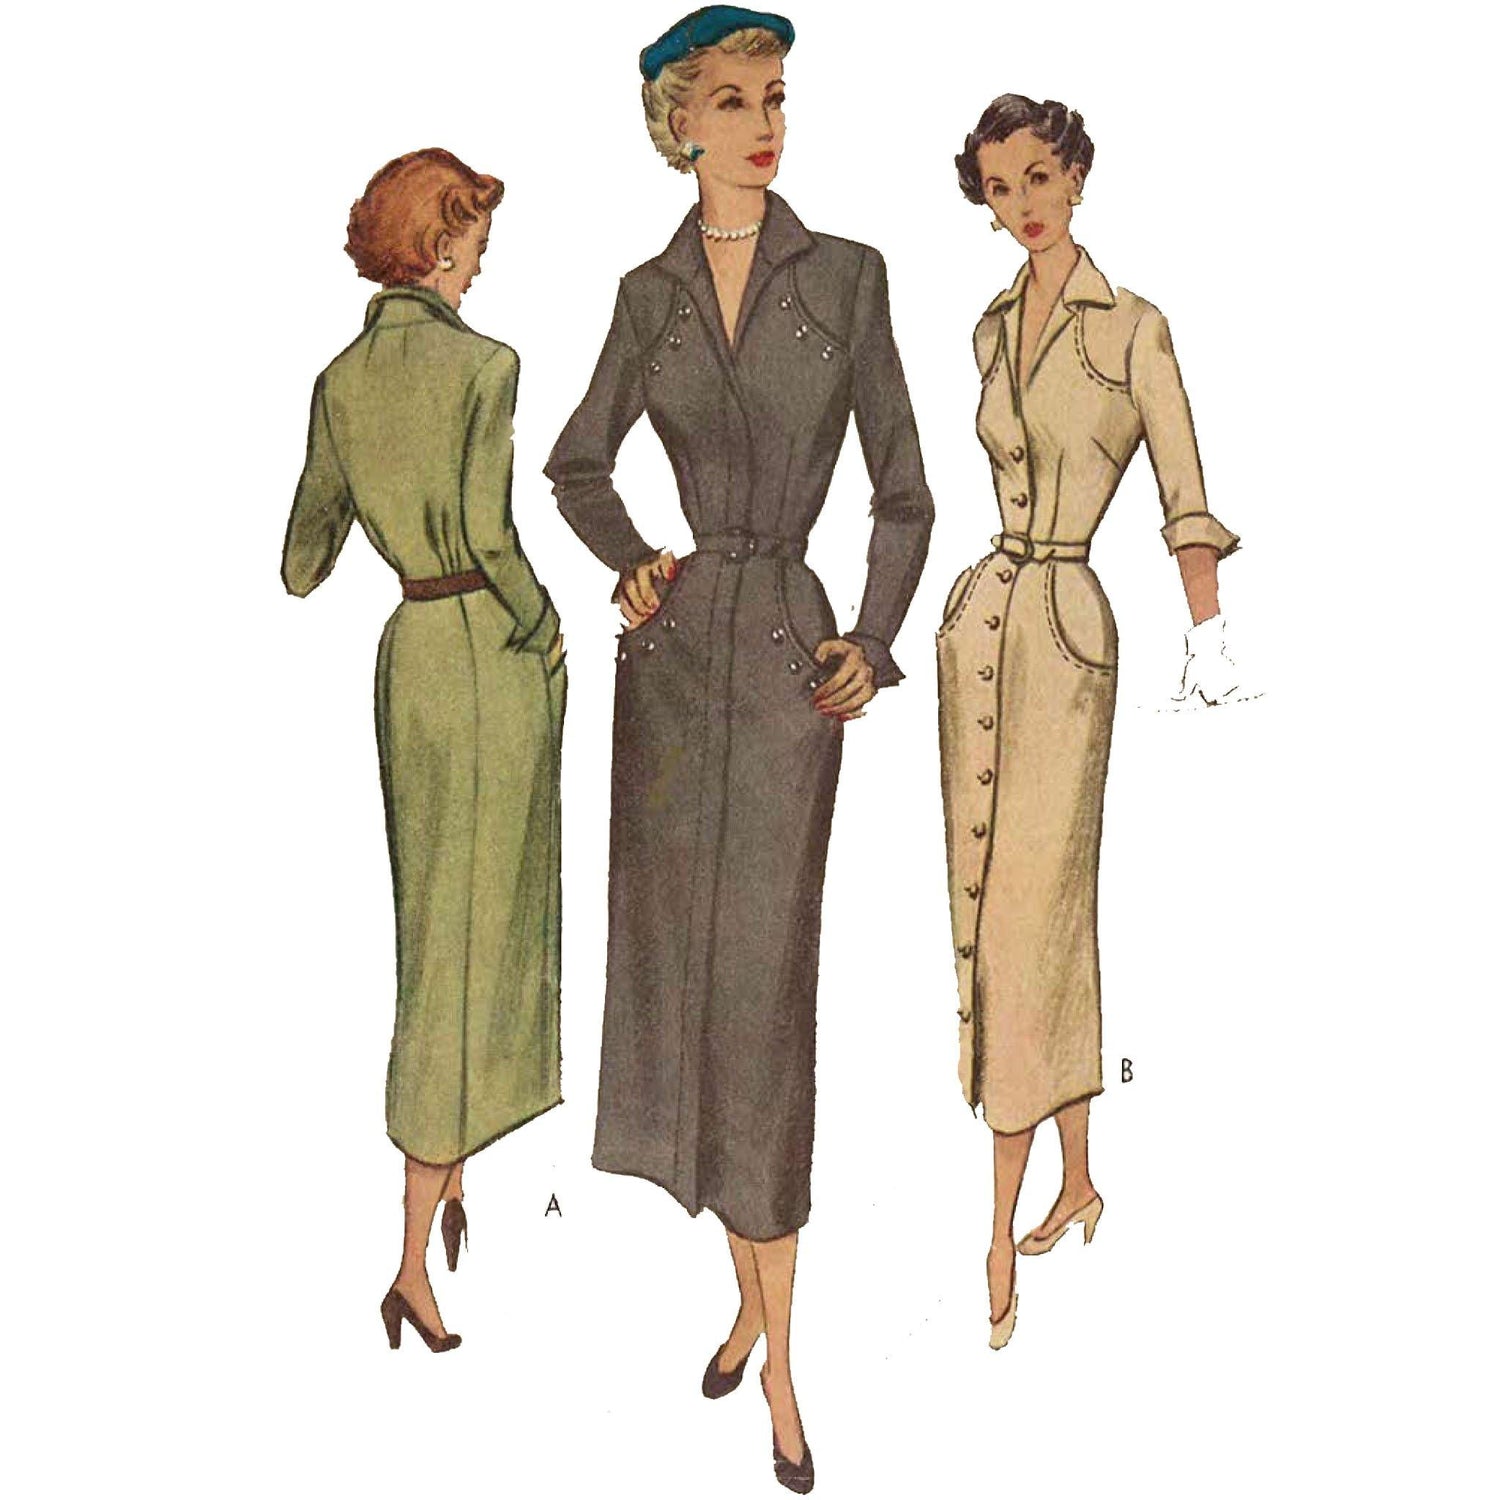 Women wearing 1940s dresses